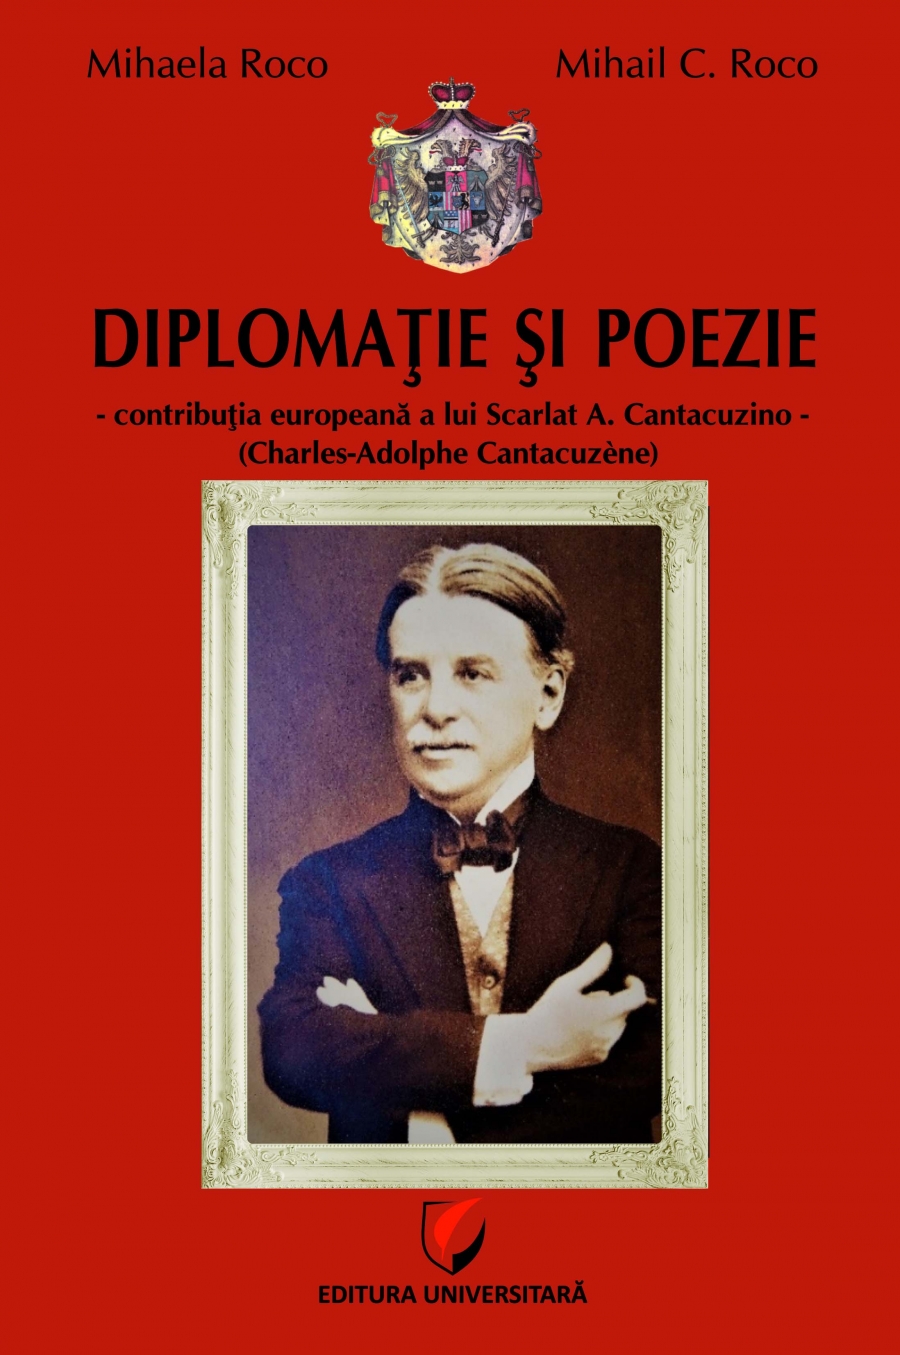 Diplomatie si poezie - contributia europeana a lui Scarlat A. Cantacuzino